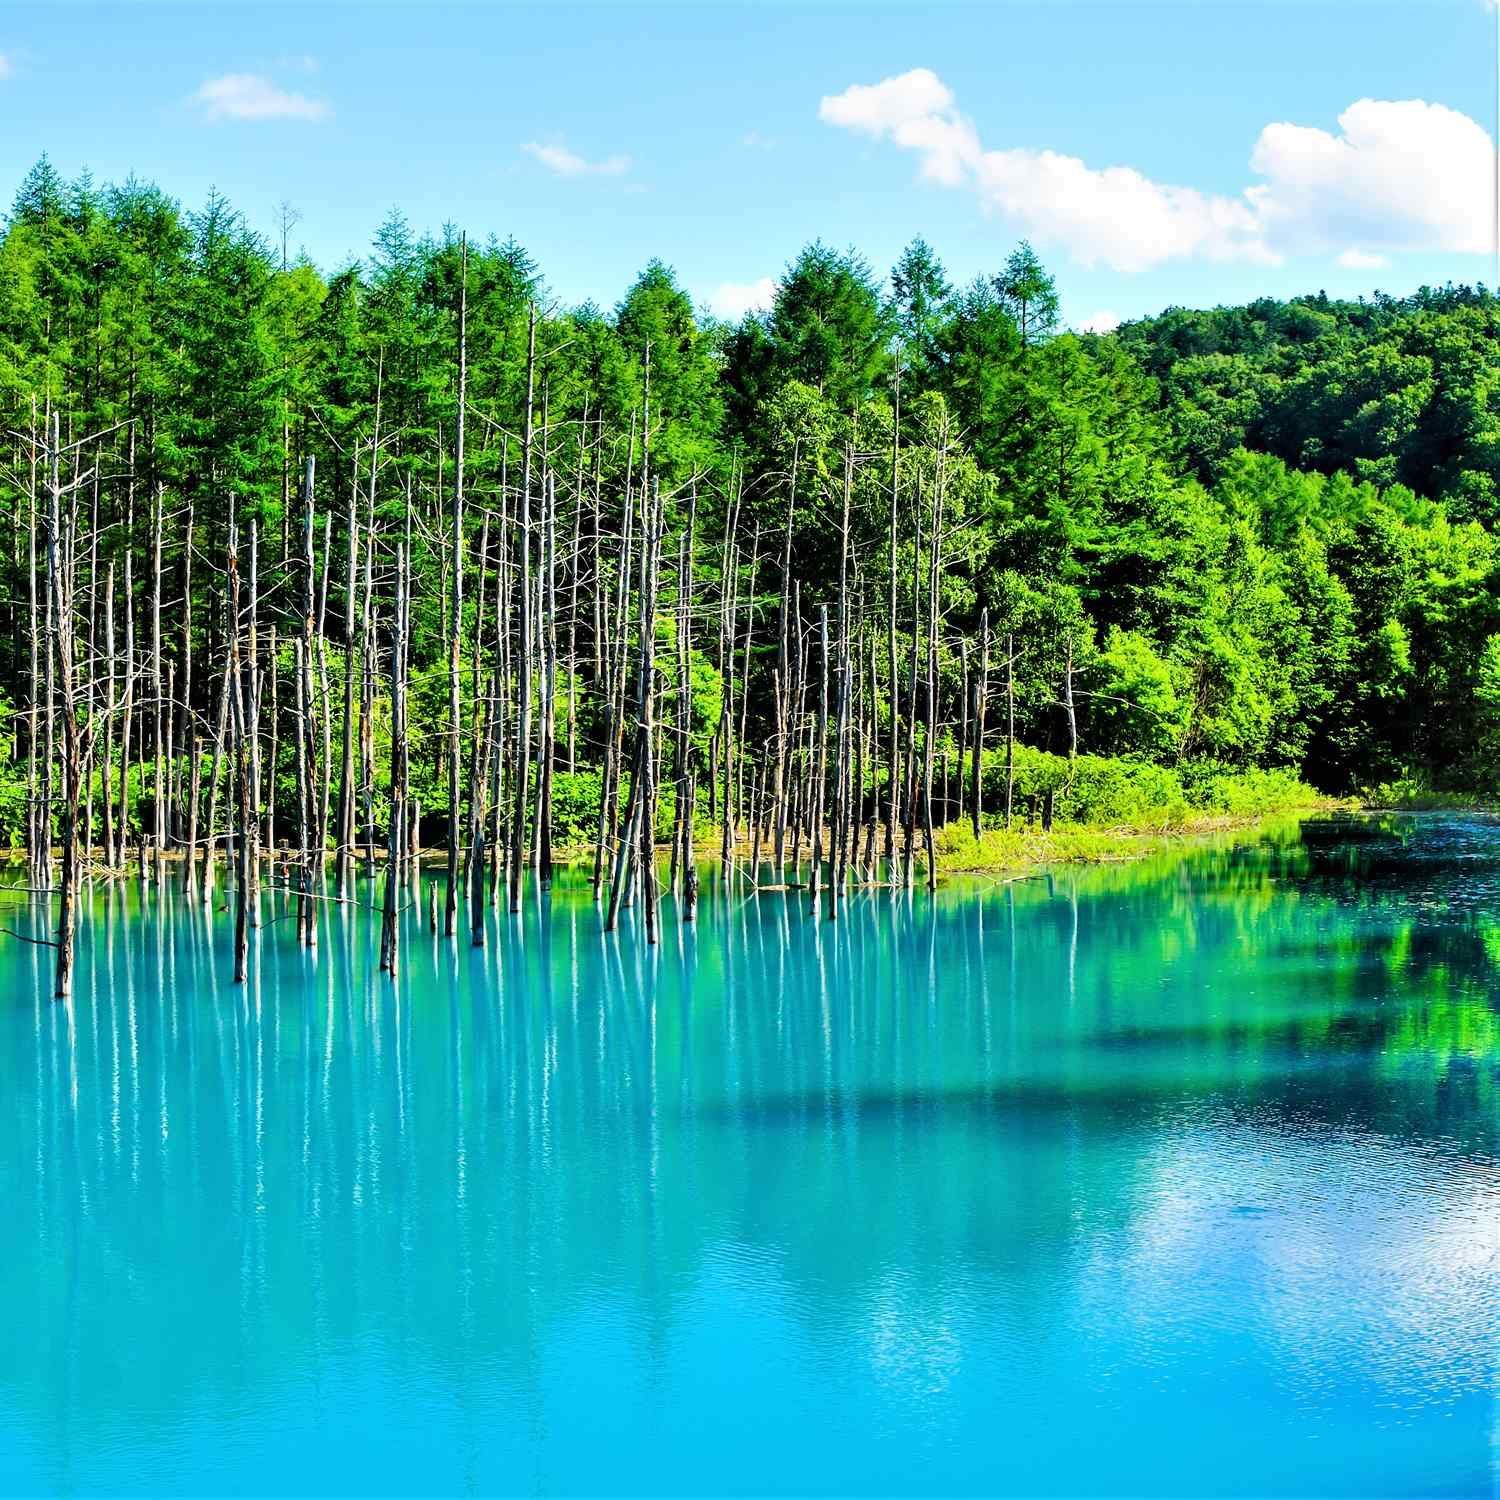 Blue Pond in Biei, Hokkaido = Shutterstock 3